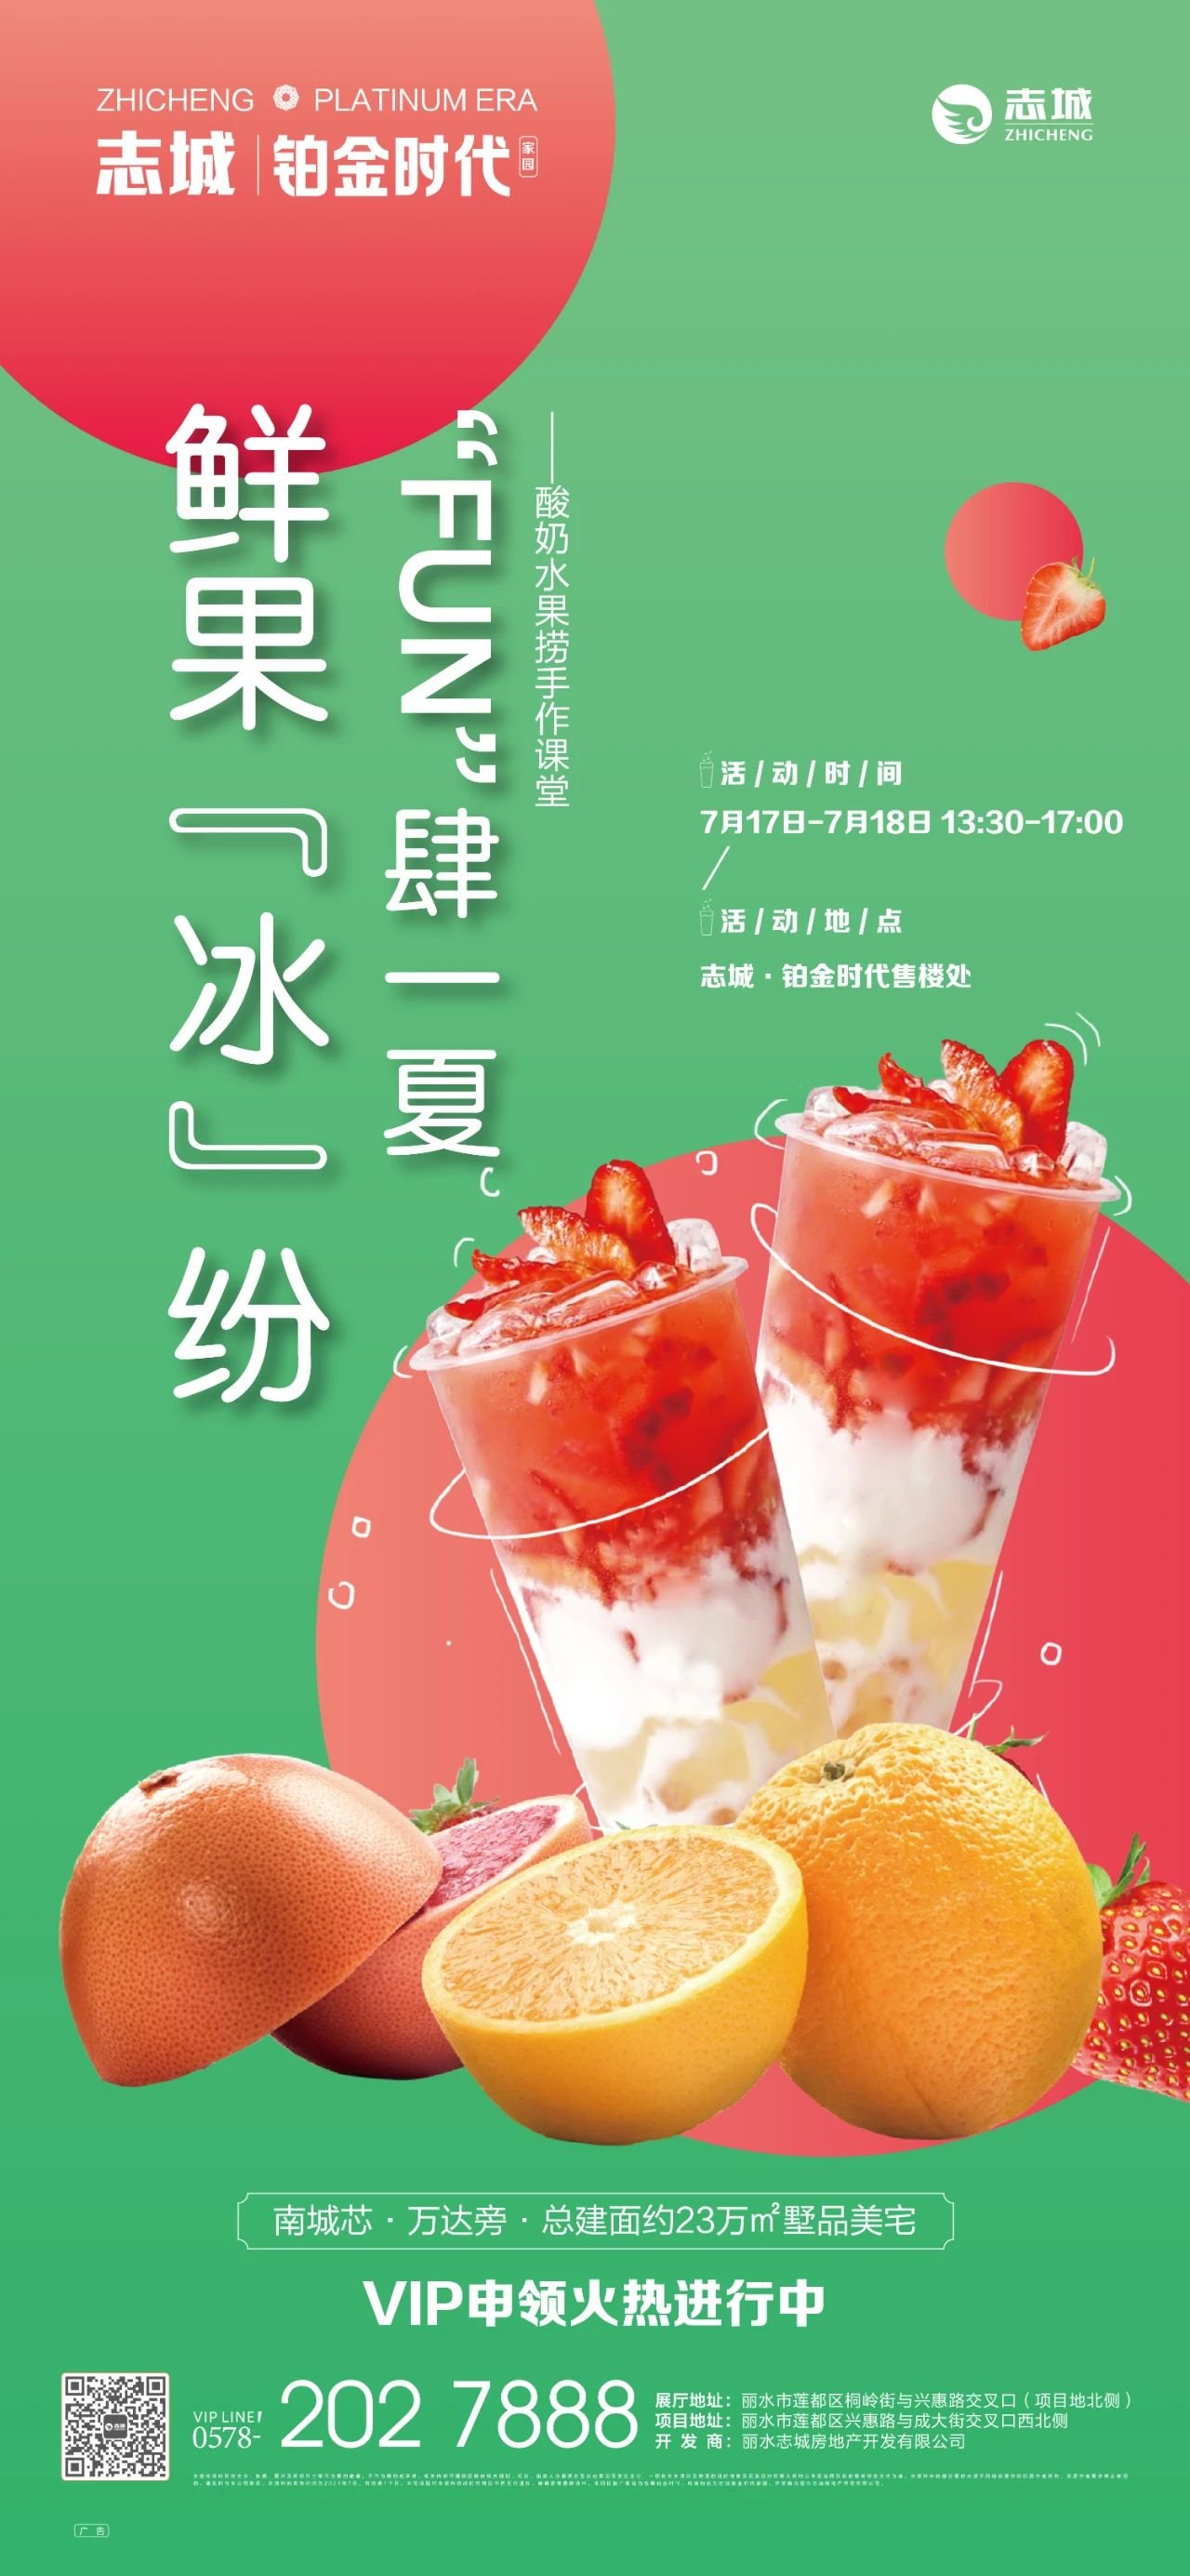 鲜果冰纷， “FUN”肆一夏|志城·铂金时代酸奶水果捞DIY，清凉来袭！